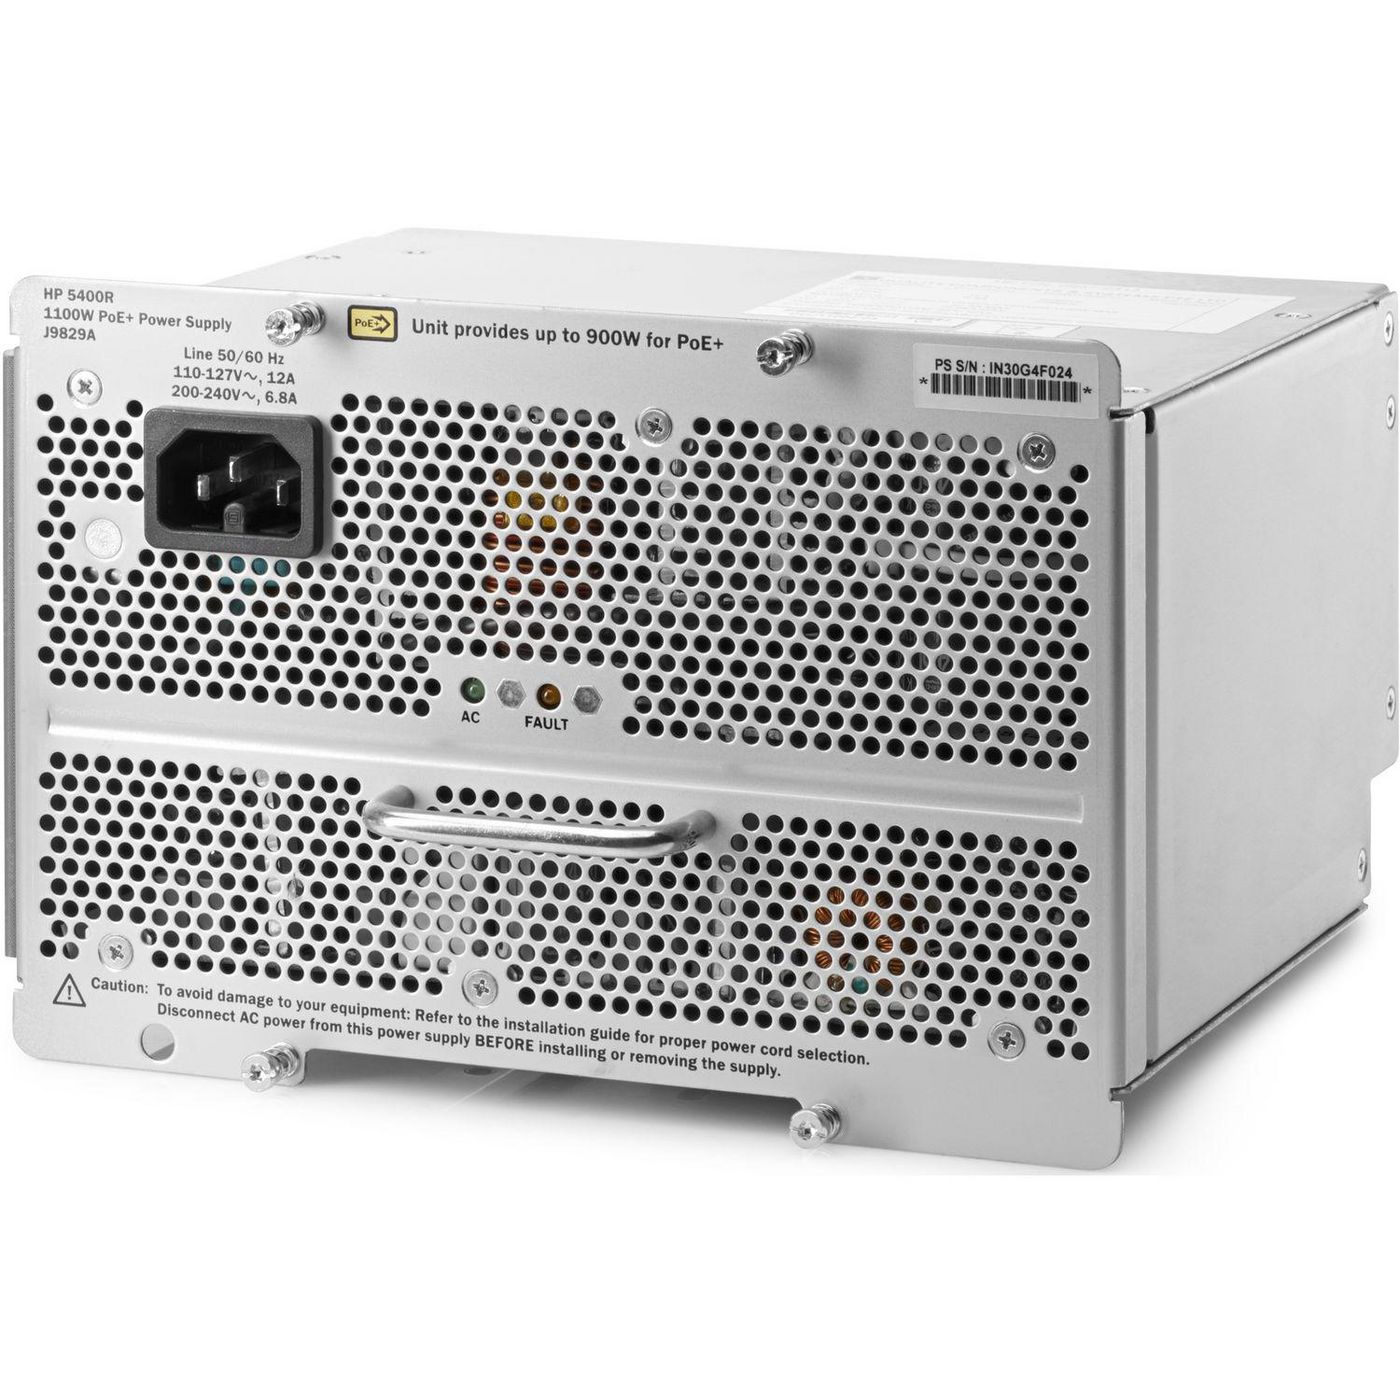 Hewlett-Packard-Enterprise J9829A 5400R 1100W POE+ Zl2 